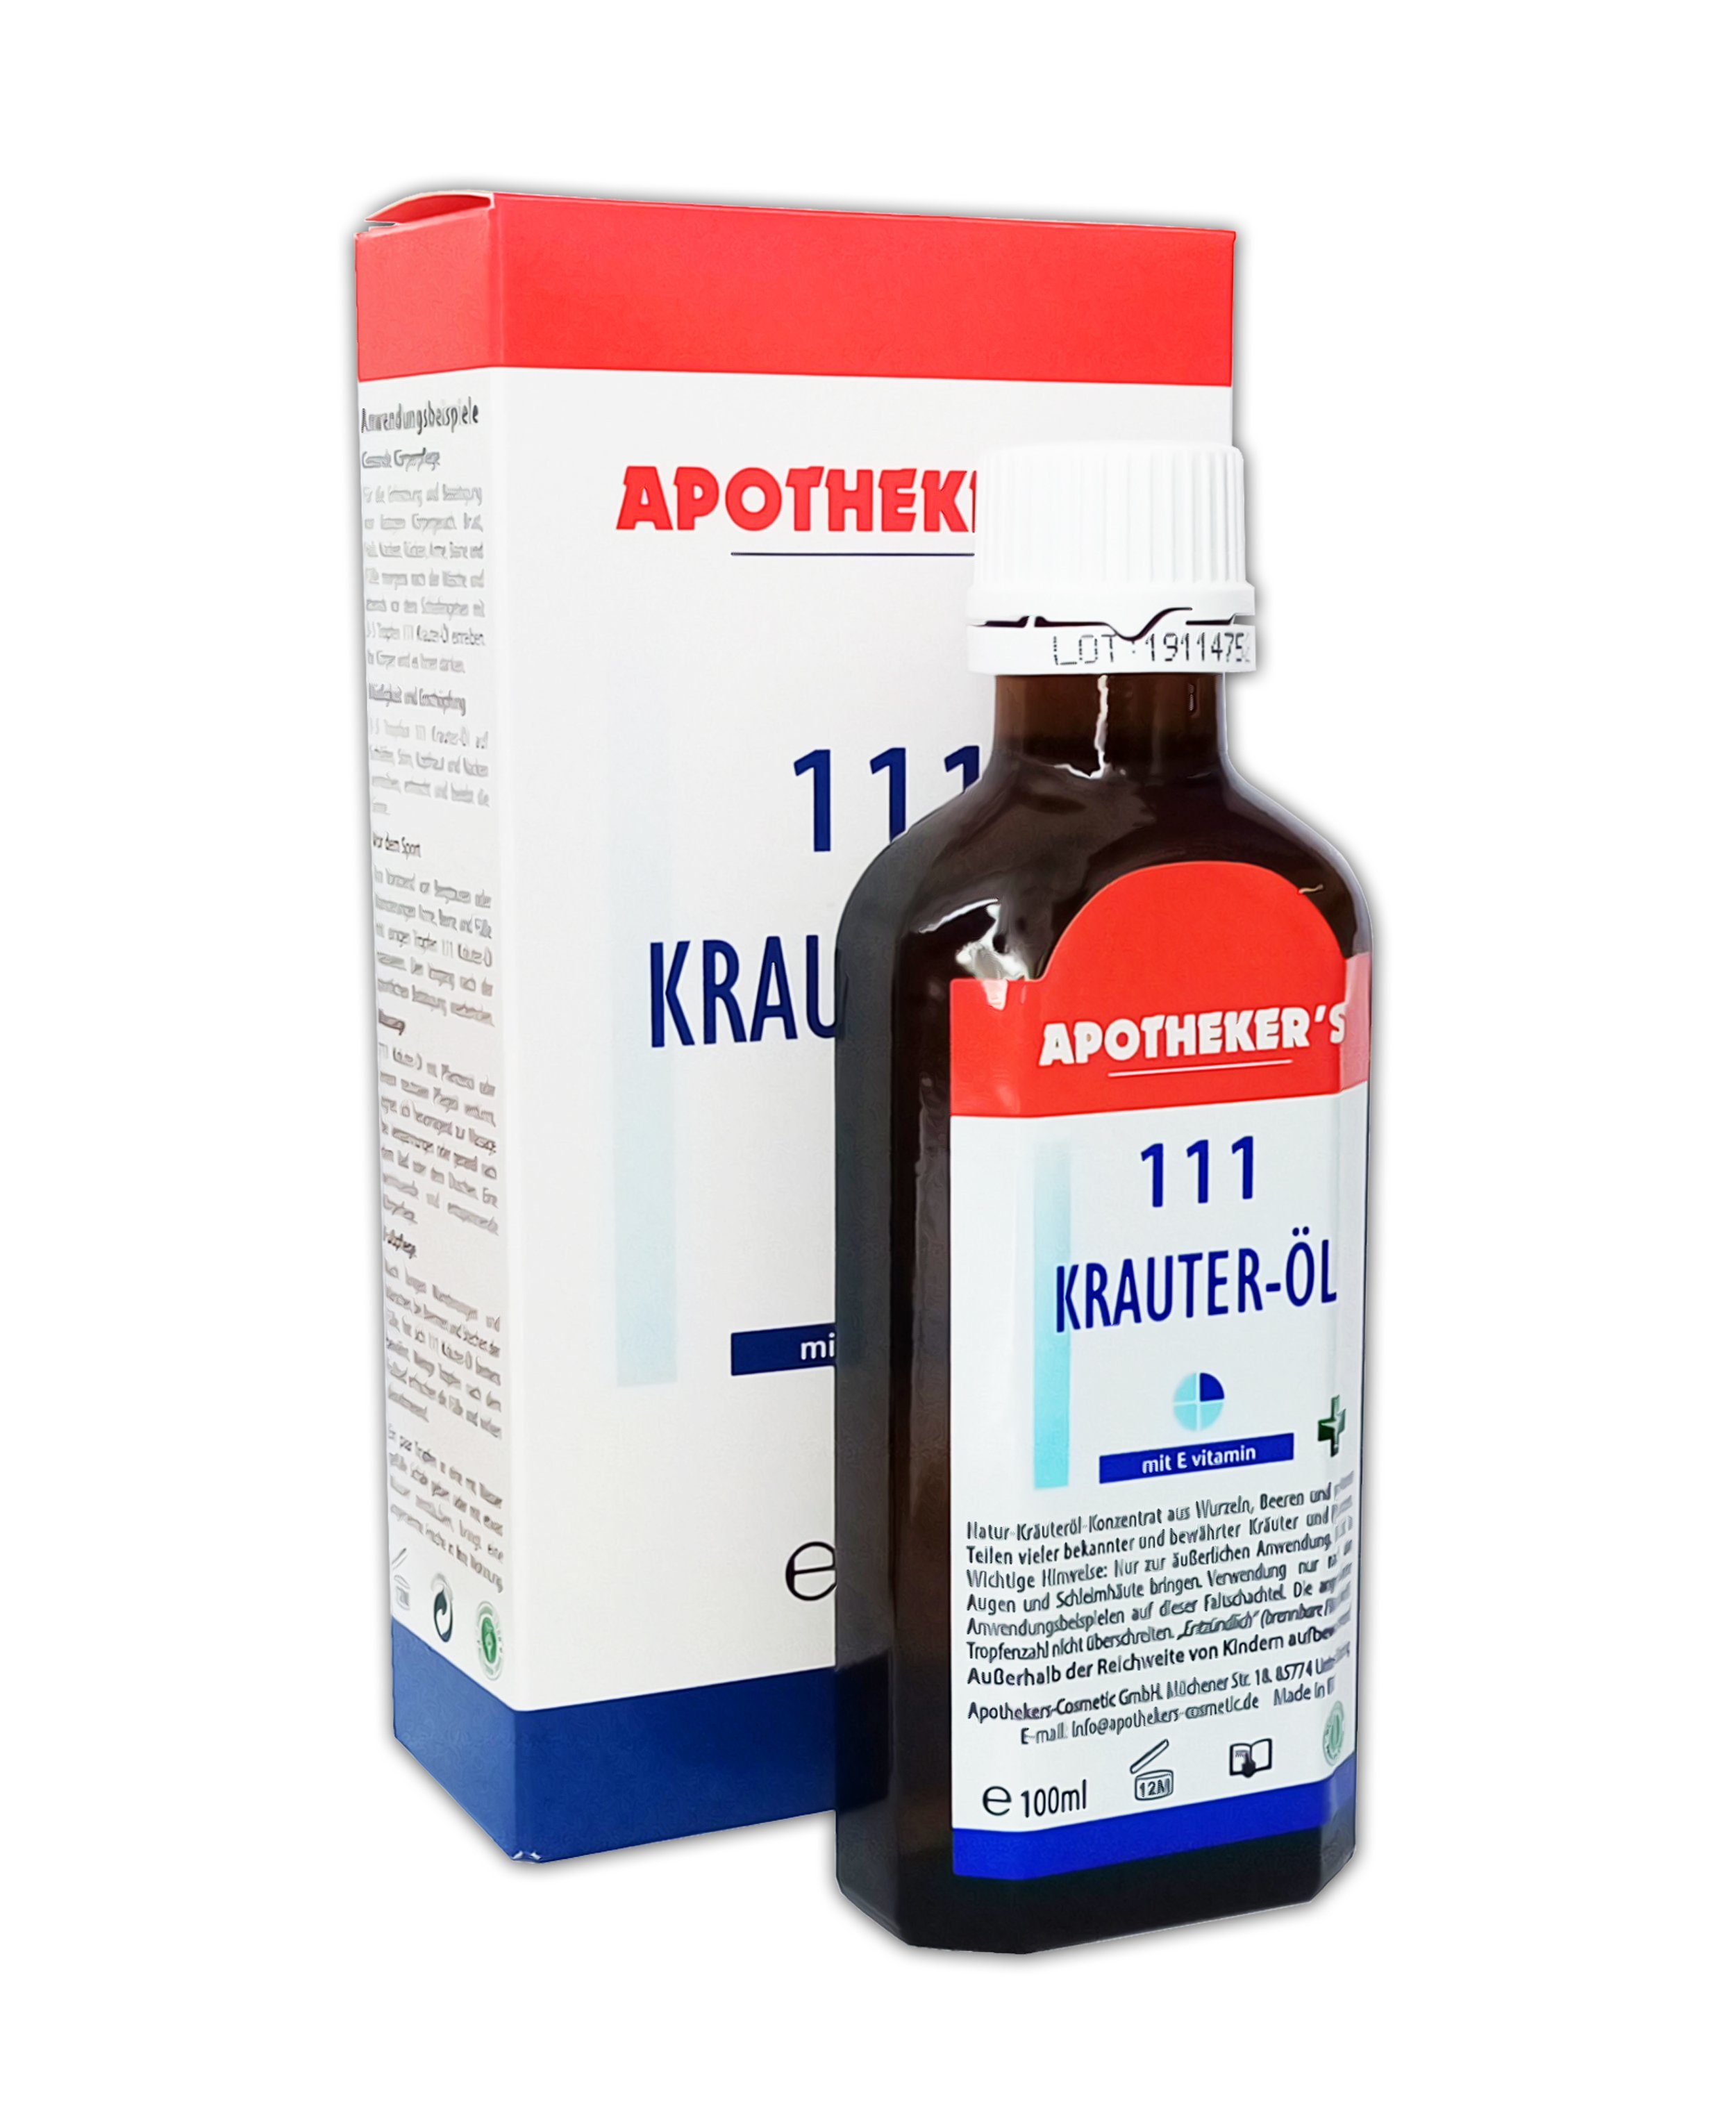 APOTHEKER'S Gleit- & Massageöl Kräuter-Öl 100ml 111 mit E-vitamin Naturkräuteröl Kräuteröl Körperpflege 47, 1-tlg.